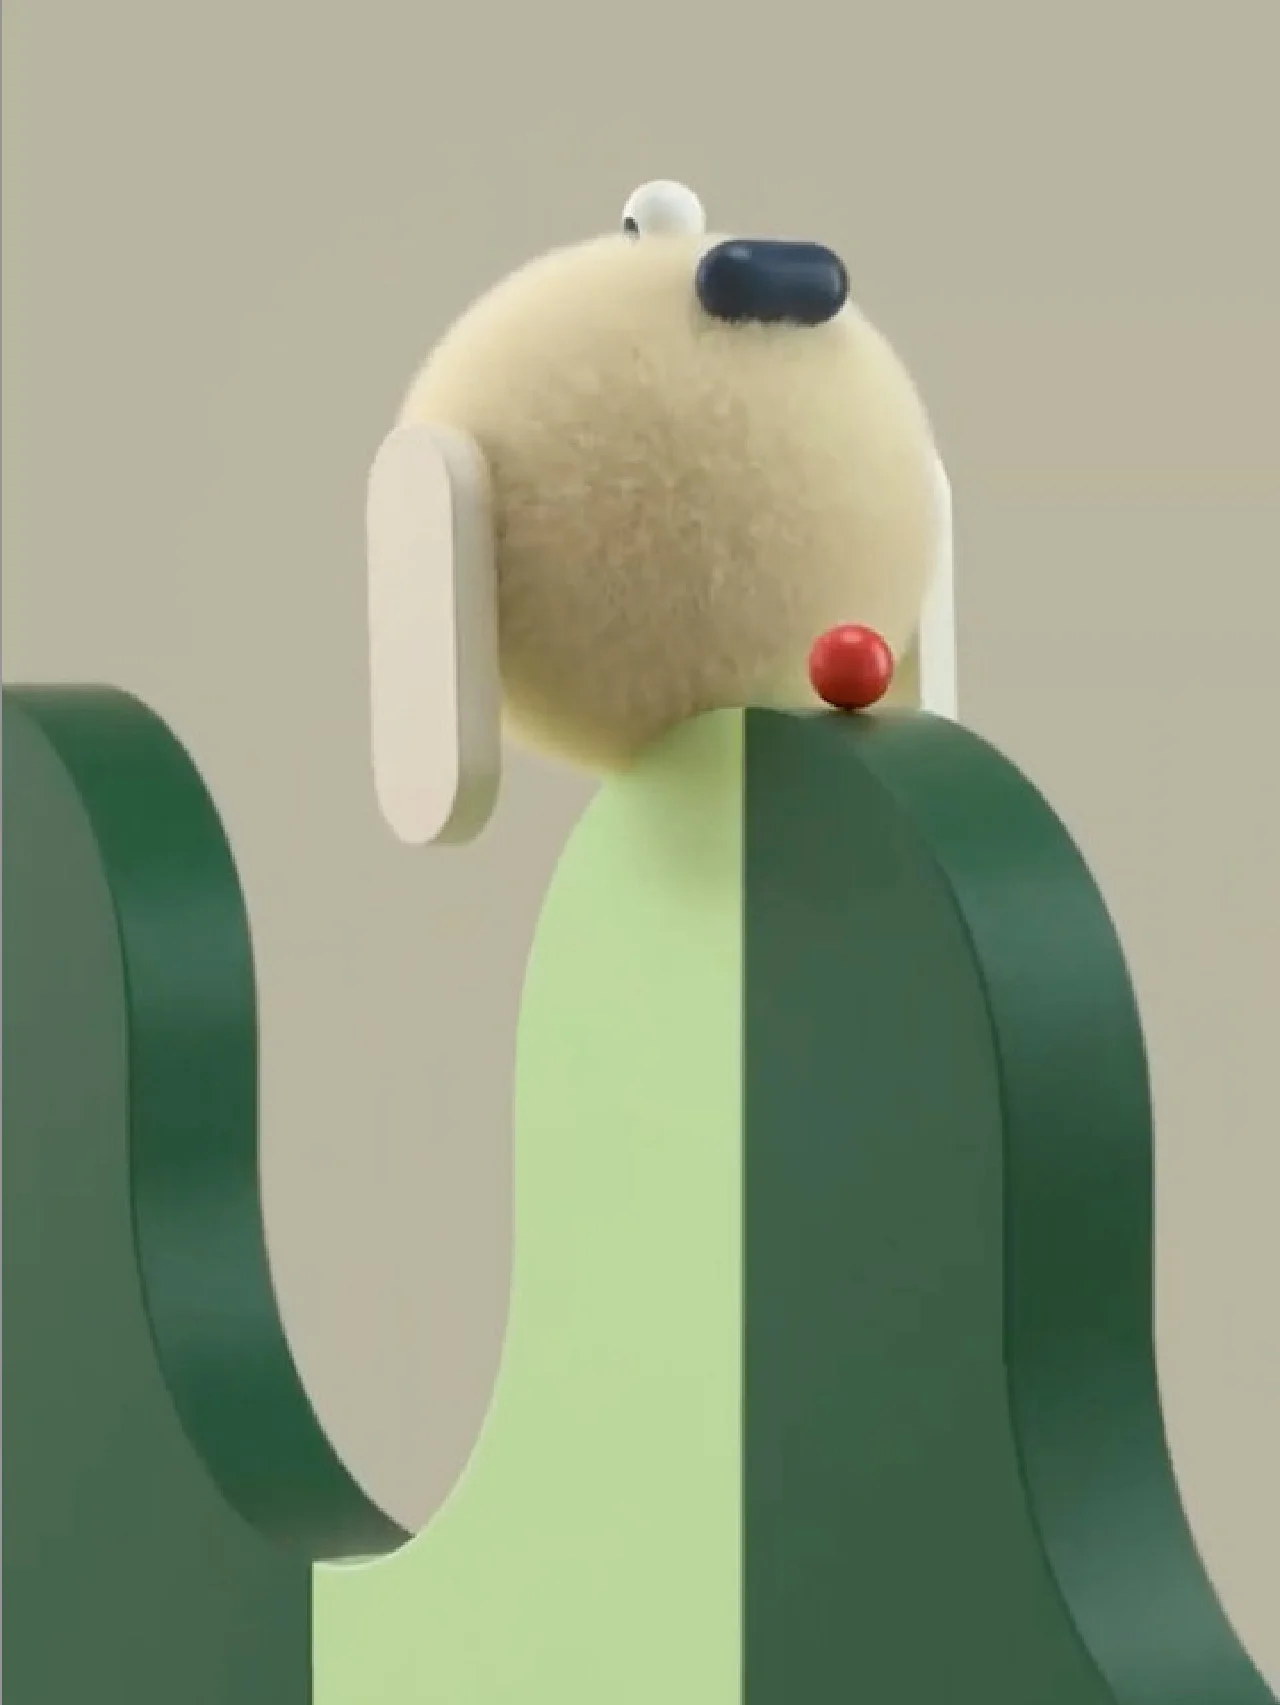 フィンランド発のアートプロジェクト「Buddy Dog」が東京でローンチ。「WHAT IS BUDDY DOG THINKING?」展を開催